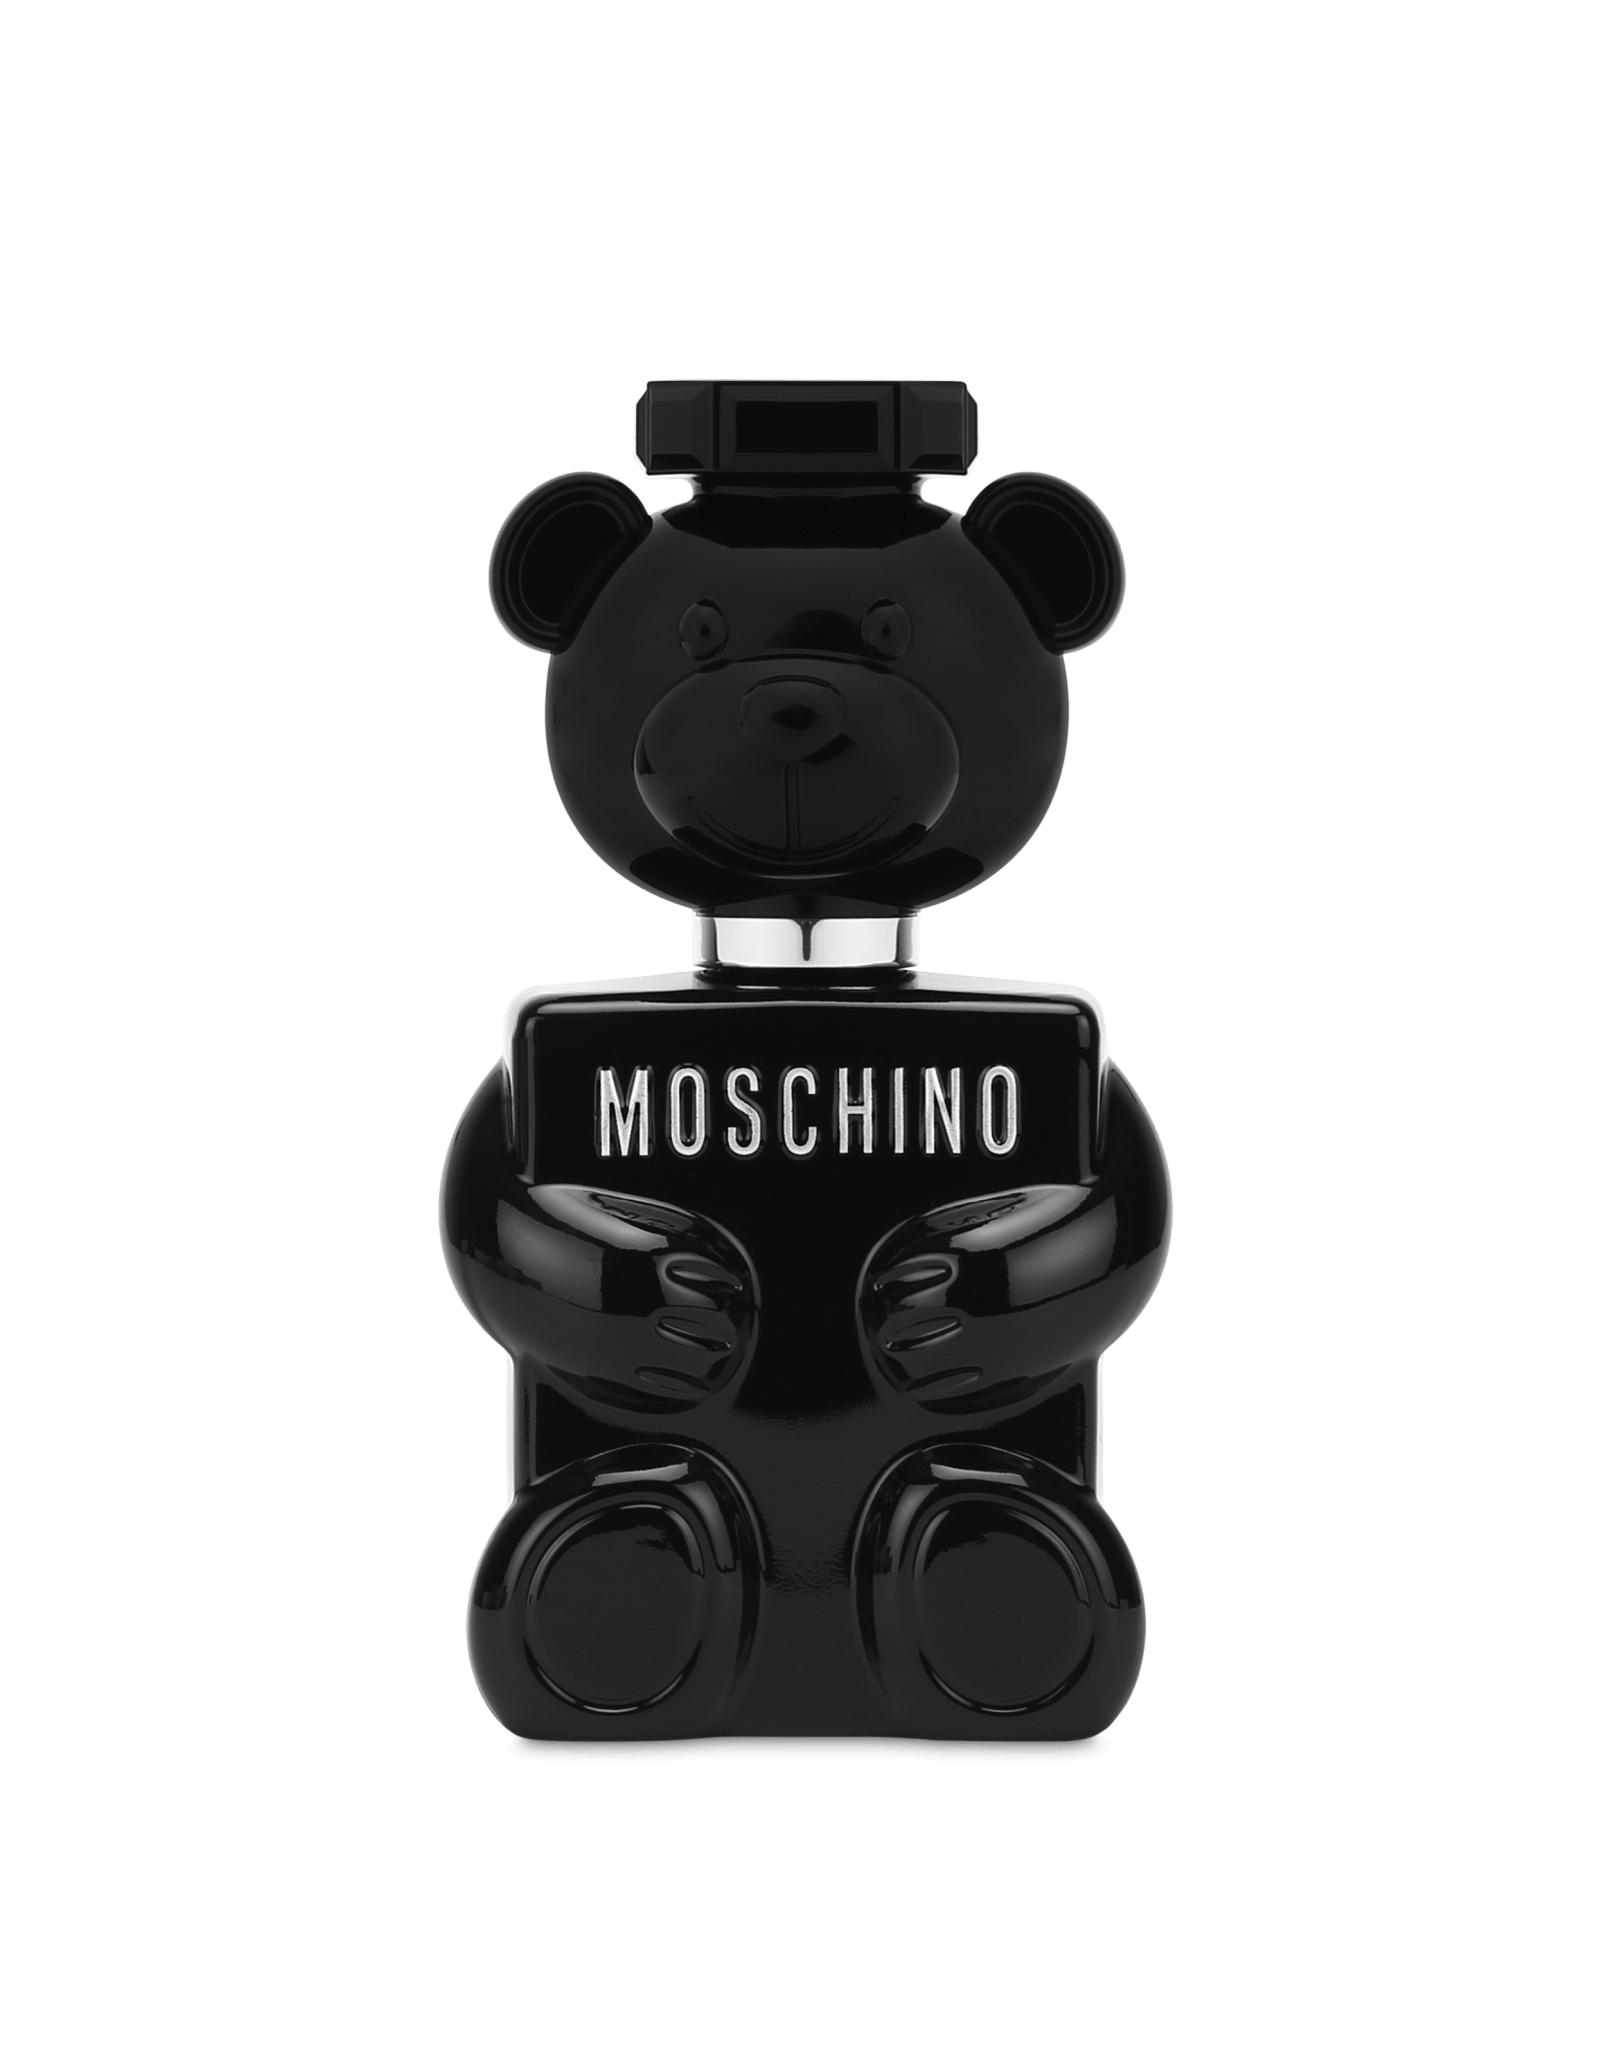 Moschino Toy Boy - Jasmine Parfums- [ean]